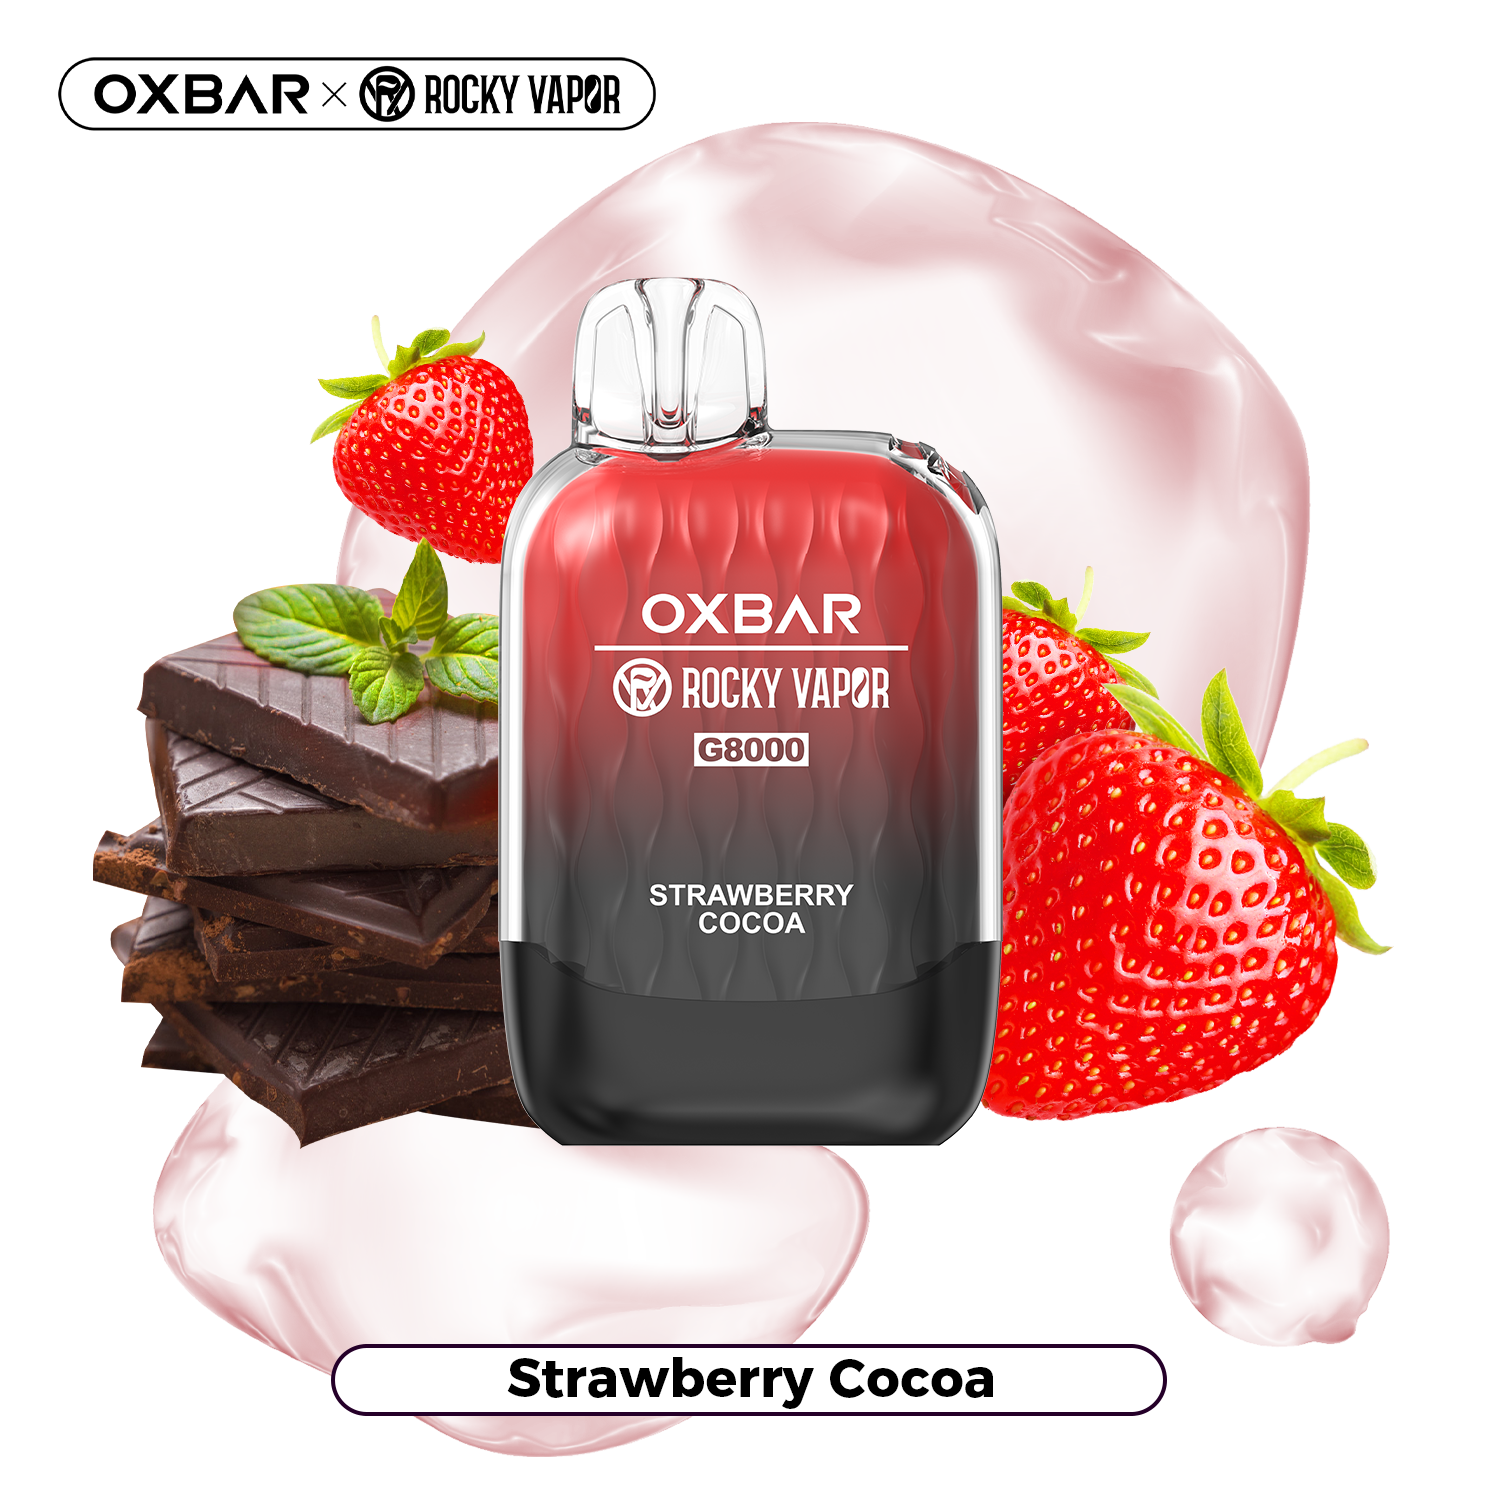 Strawberry Cocoa - OXBAR G8000 - 20mg - 5pc/box